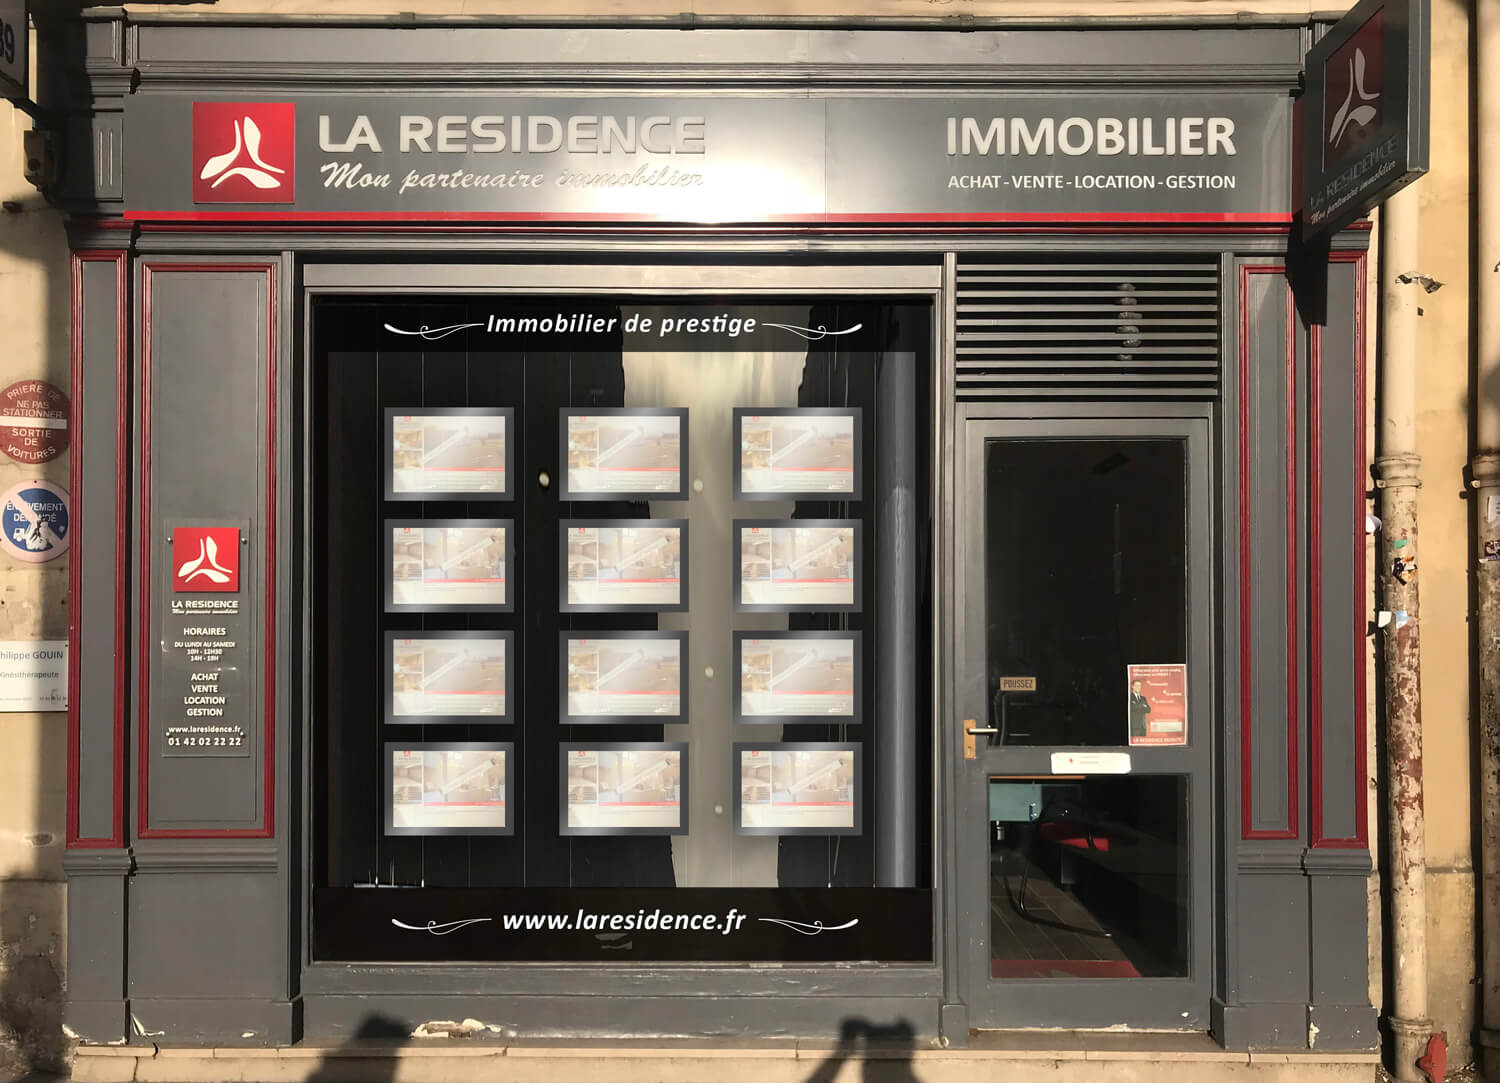 Prix immobilier Paris 16ème 75016 - La Résidence